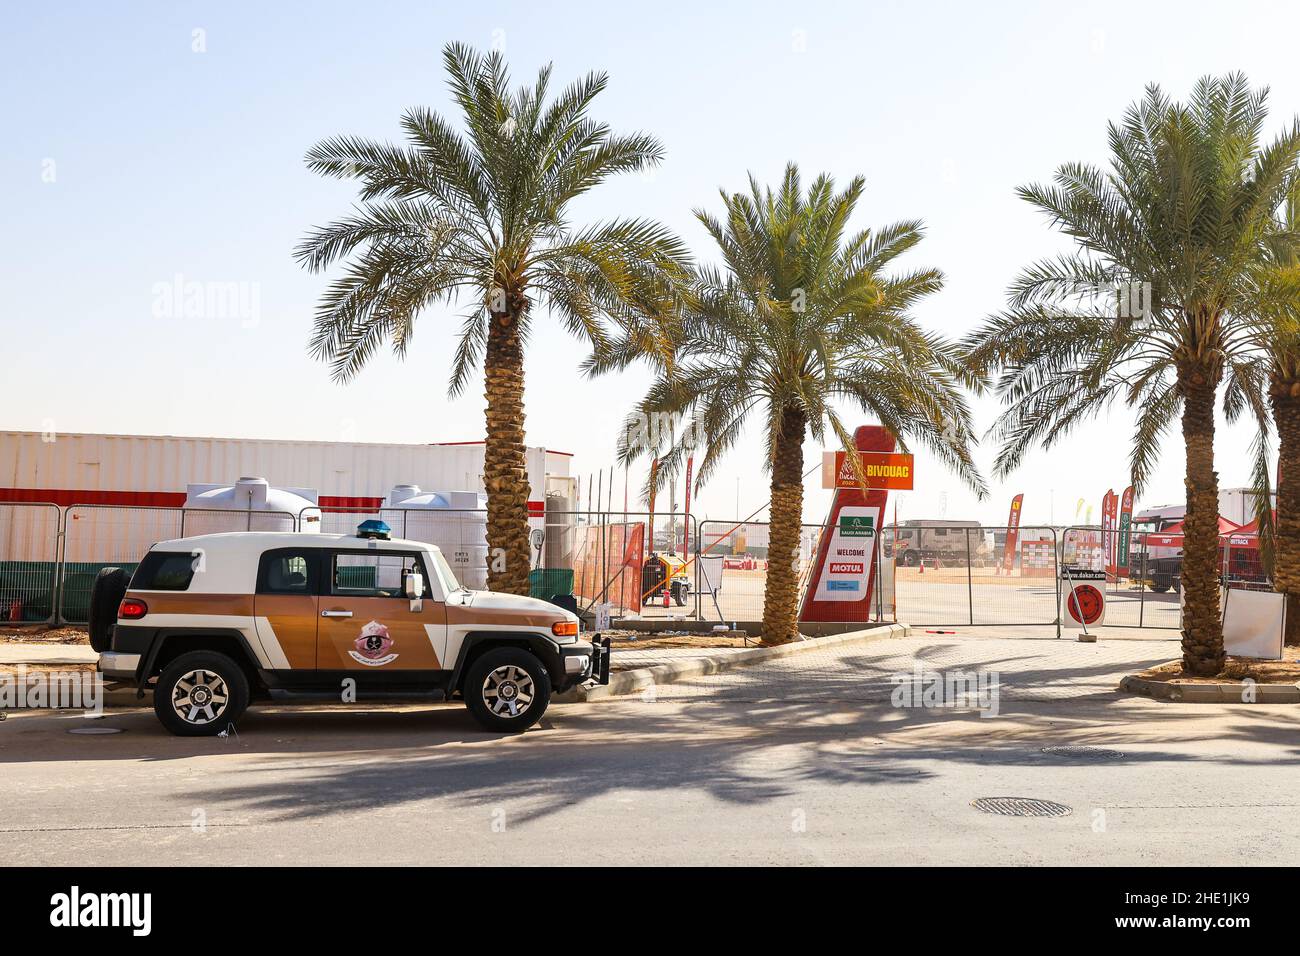 Die Polizei- und Sicherheitsverfahren, die um das Biwak und die Kundgebung nach dem Verdacht der Bombardierung der Kundgebung während des Ruhetag der Rallye Dakar 2022 am 8th 2022. Januar in Riad, Saudi-Arabien, eingeführt wurden - Foto Florent Gooden / DPPI Stockfoto